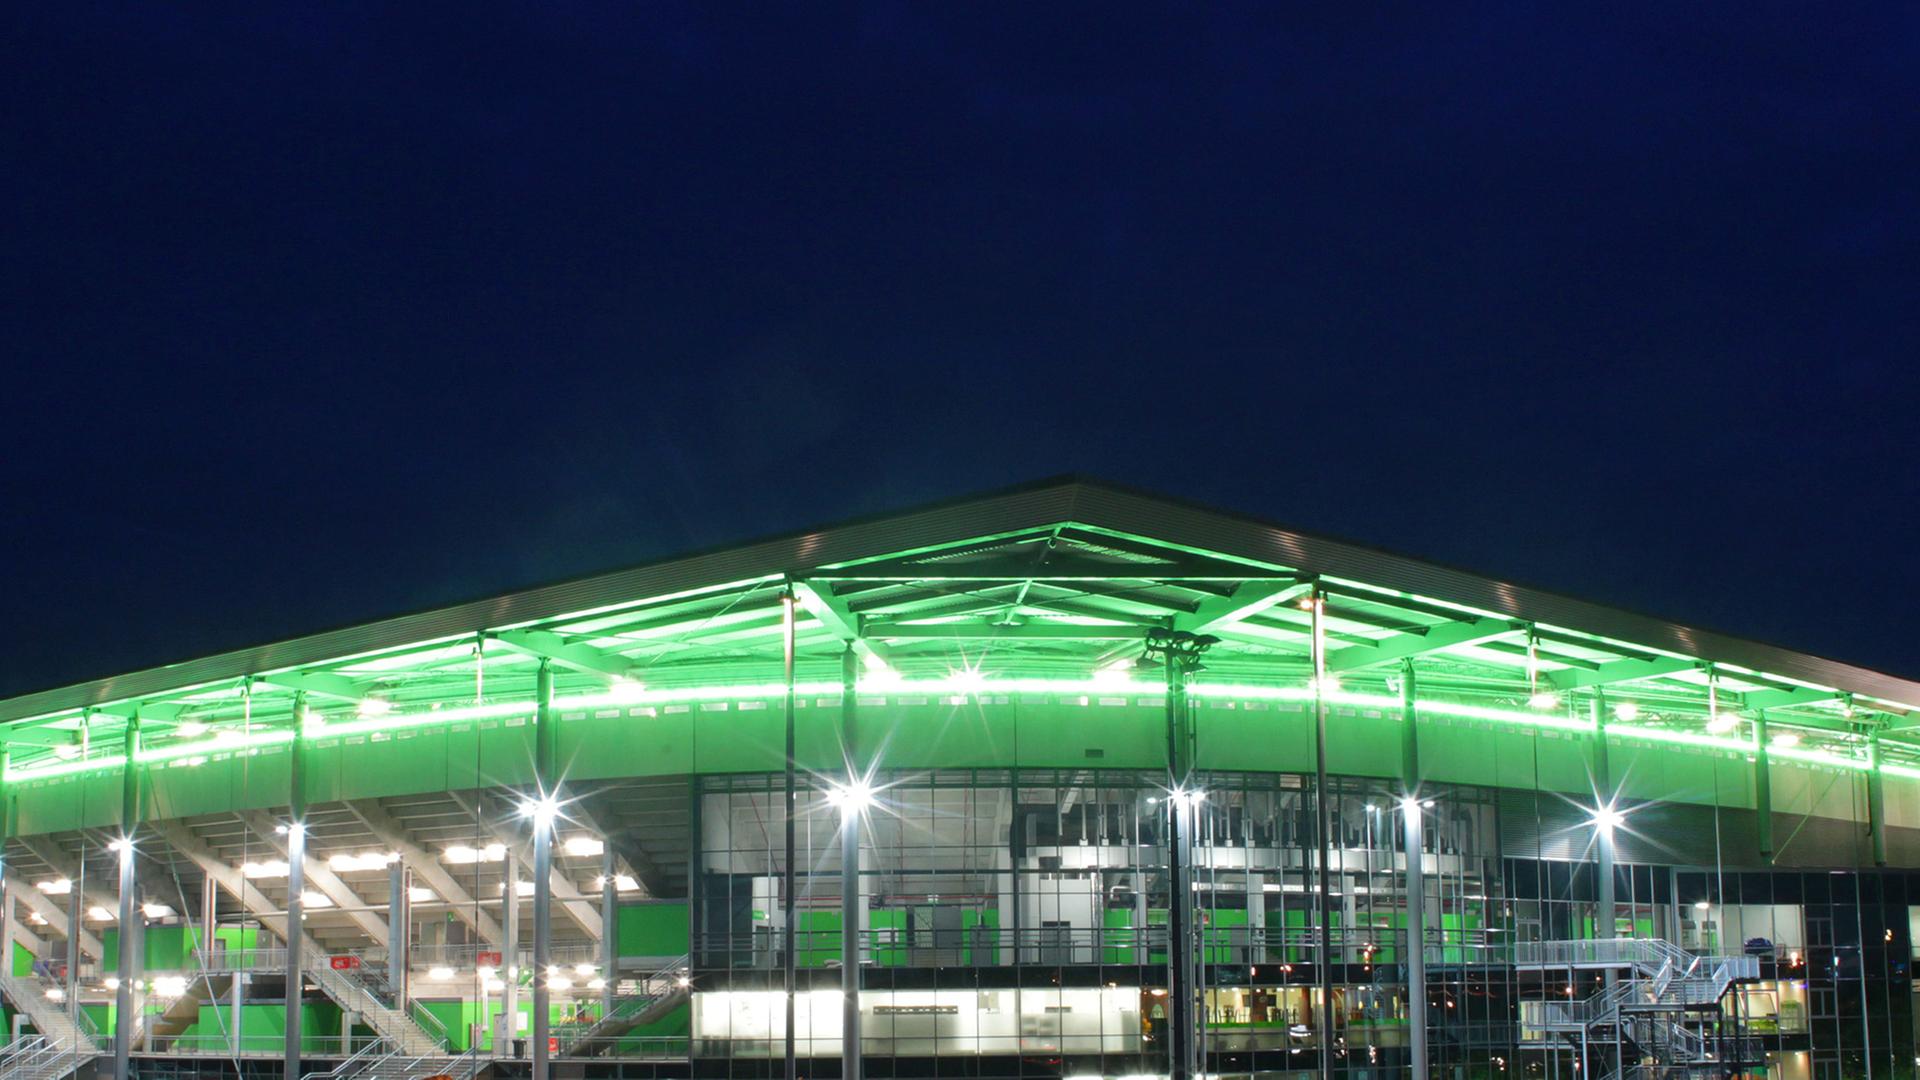 Die Teilansicht des Wolfsburger Stadions zeigt eine Ecke des mehrstöckigen Gebäudes, dessen überhängendes Dach grün angestrahlt ist.